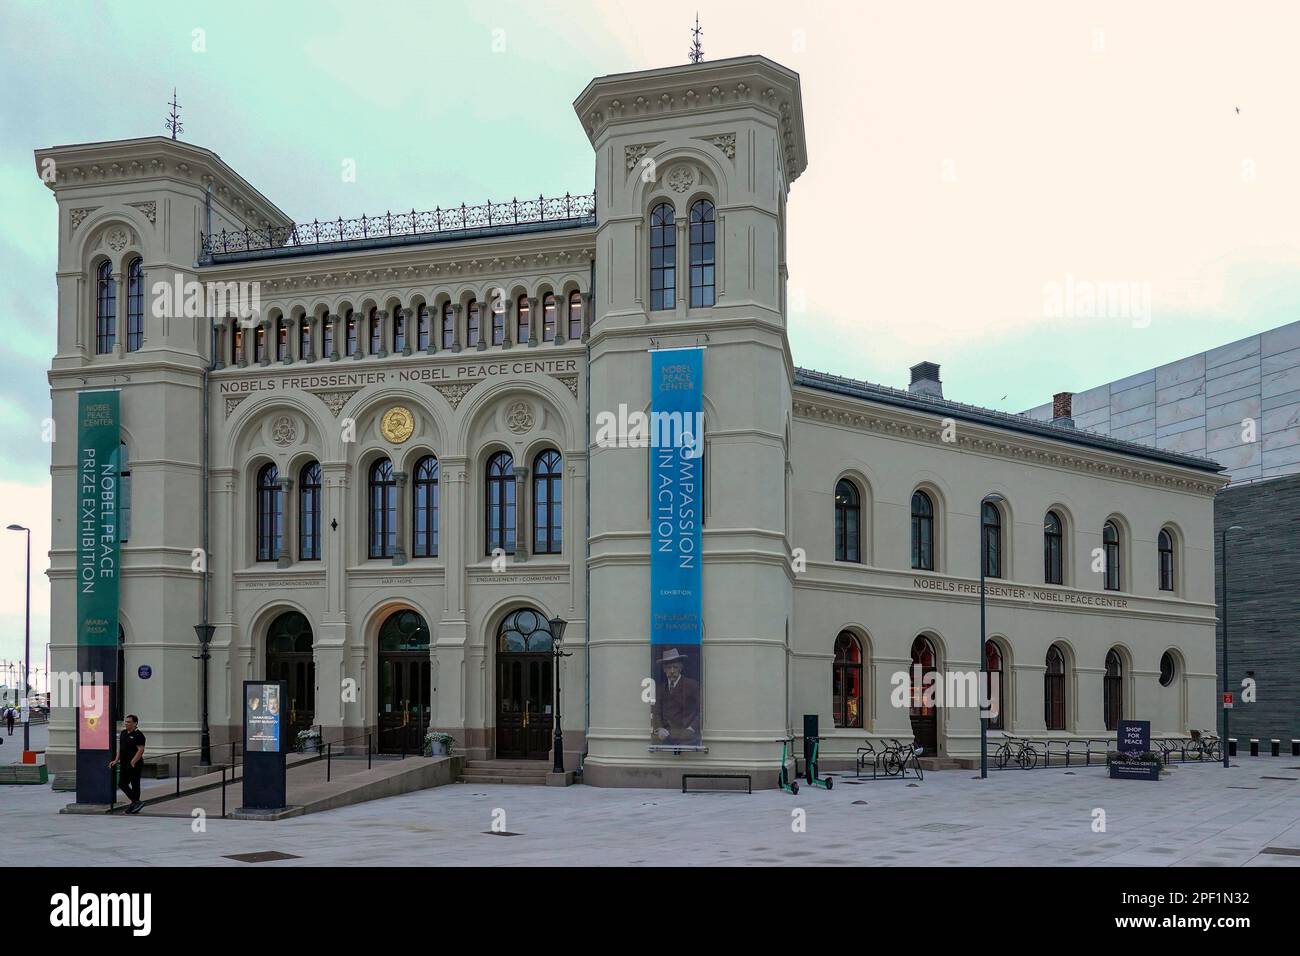 Norvège, Oslo, Nobels Fredssenter - le Nobel Peace Centre (2005) est le musée du prix Nobel de la paix qui se trouve dans l'ancien bâtiment de la gare (18 Banque D'Images